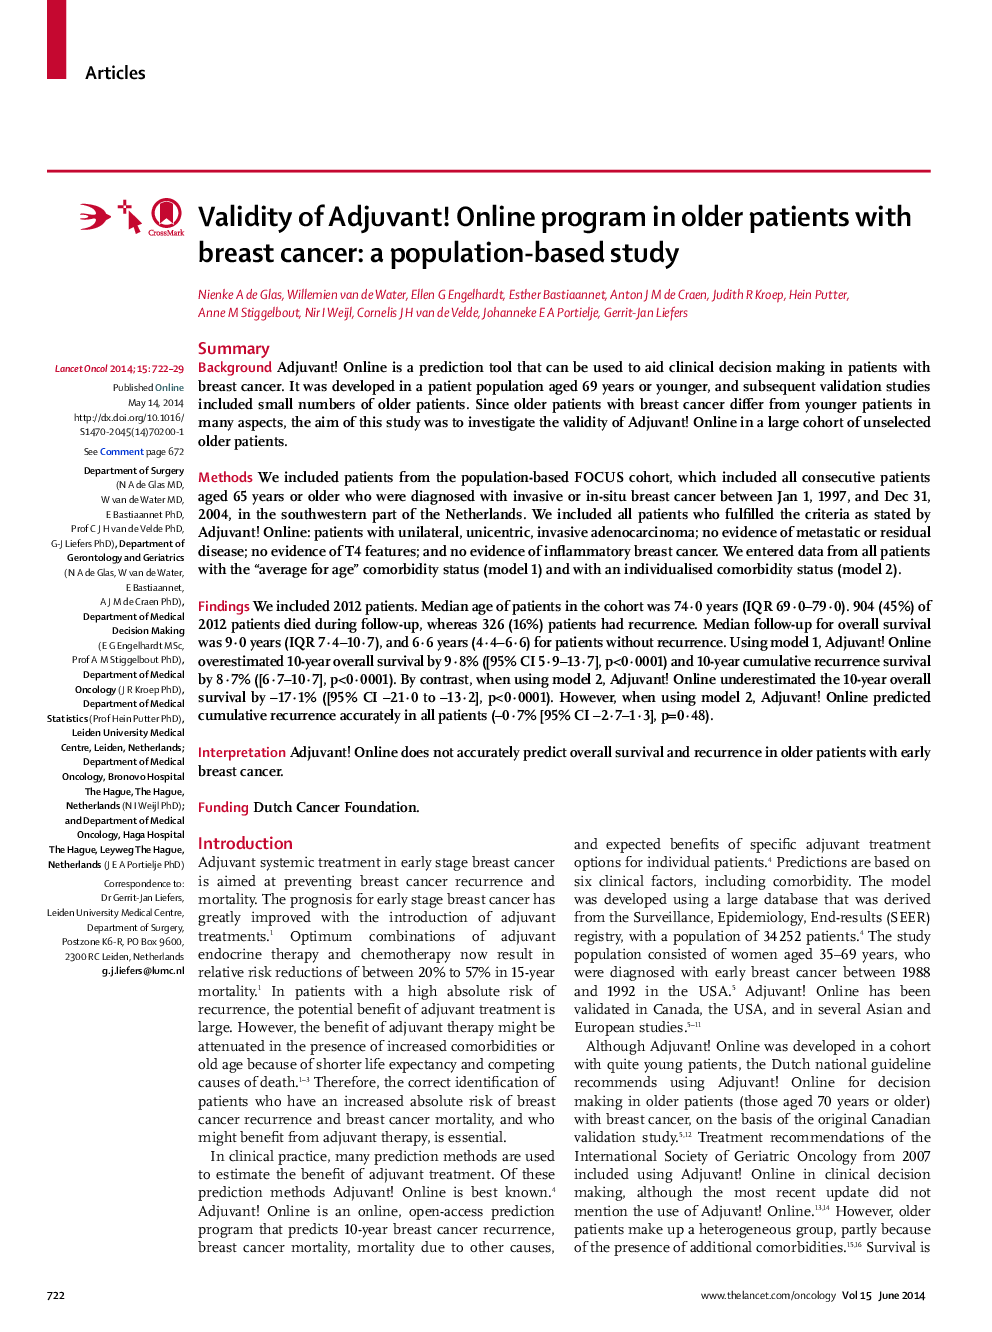 اعتبار آدجوانت! برنامه های آنلاین در بیماران مسن تر با سرطان پستان: یک مطالعه مبتنی بر جمعیت است 